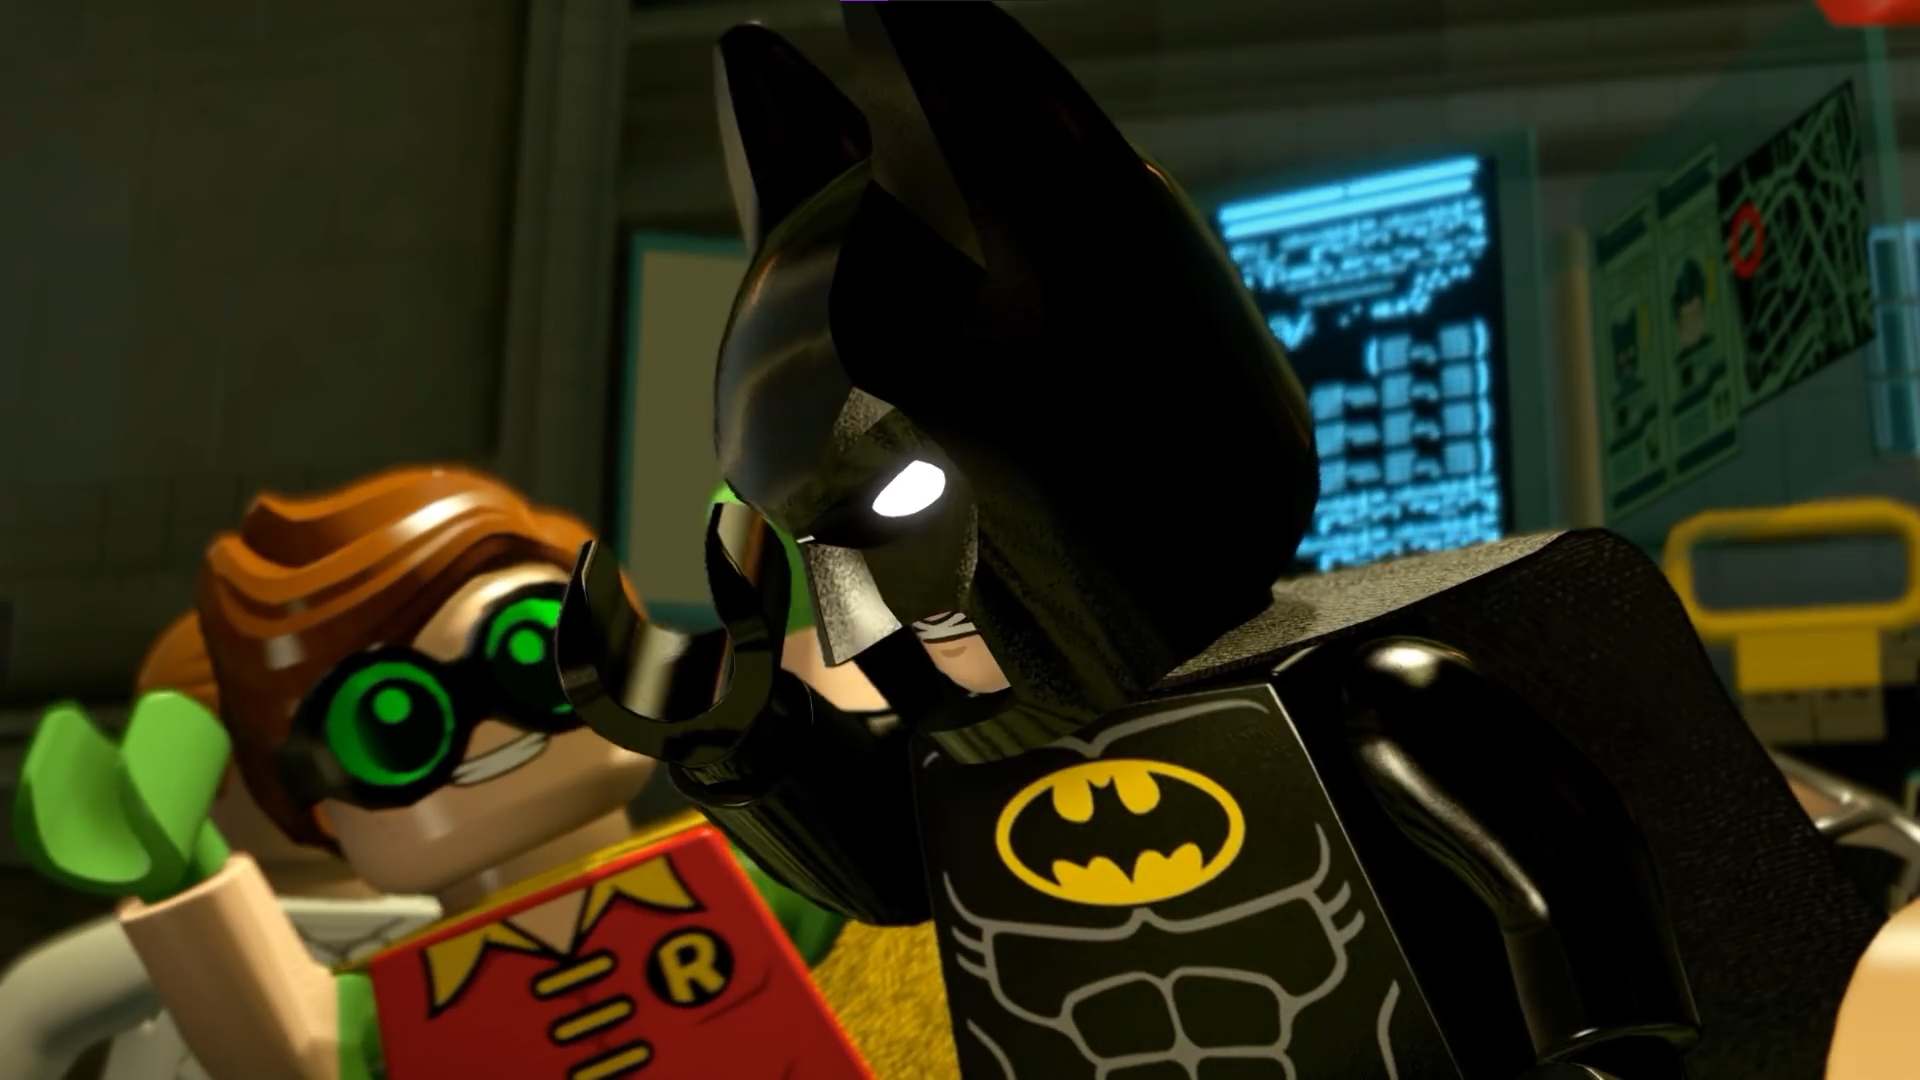 LEGO Batman Movie Comic-Con Trailer: Batman & Robin Unite!